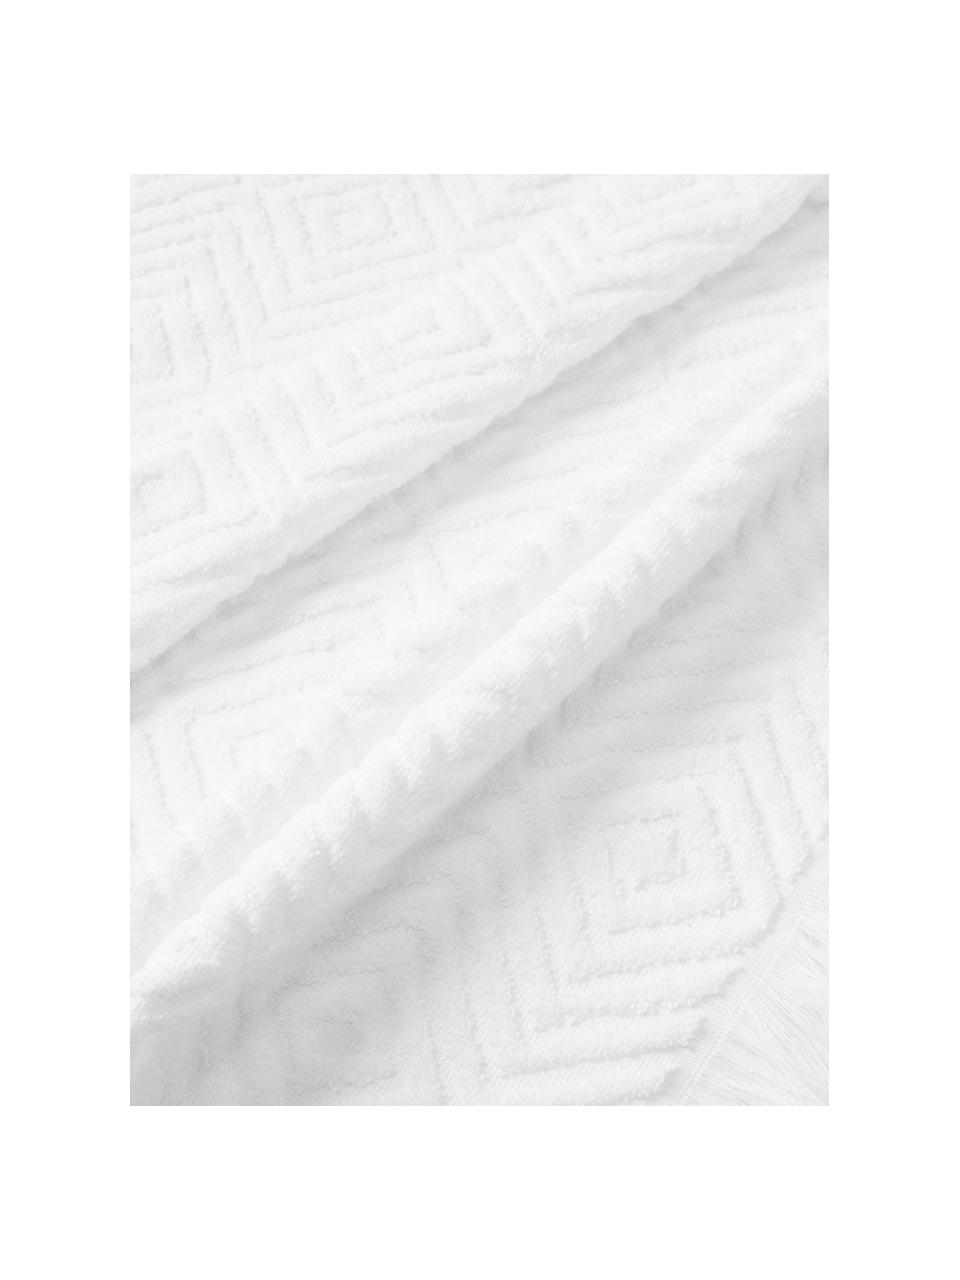 Lot de serviettes de bain texturées Jacqui, tailles variées, Blanc, 4 éléments (2 serviettes de toilette et 2 draps de bain)